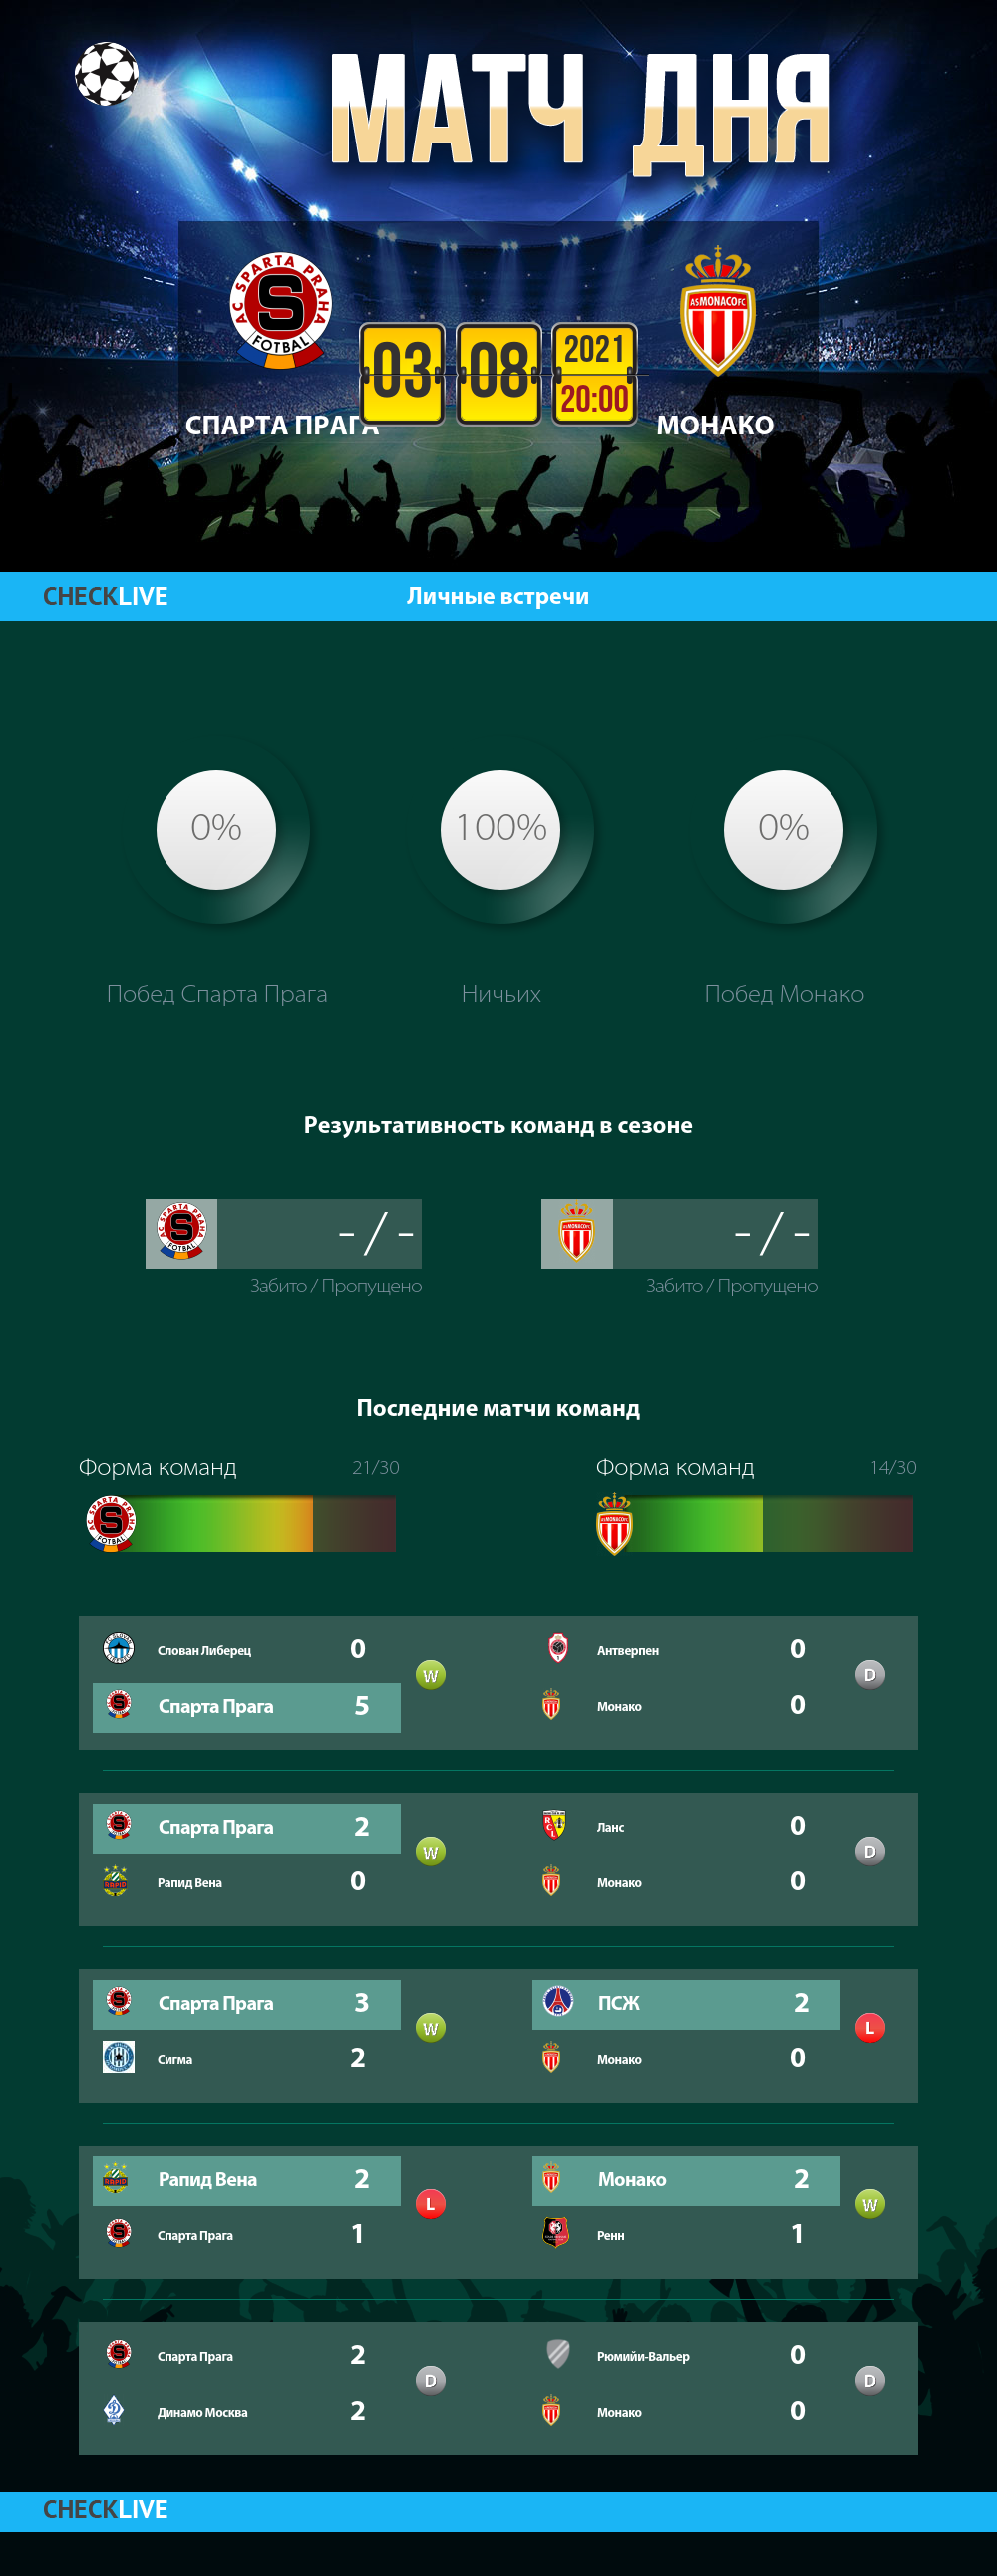 Инфографика Спарта Прага и Монако матч дня 03.08.2021